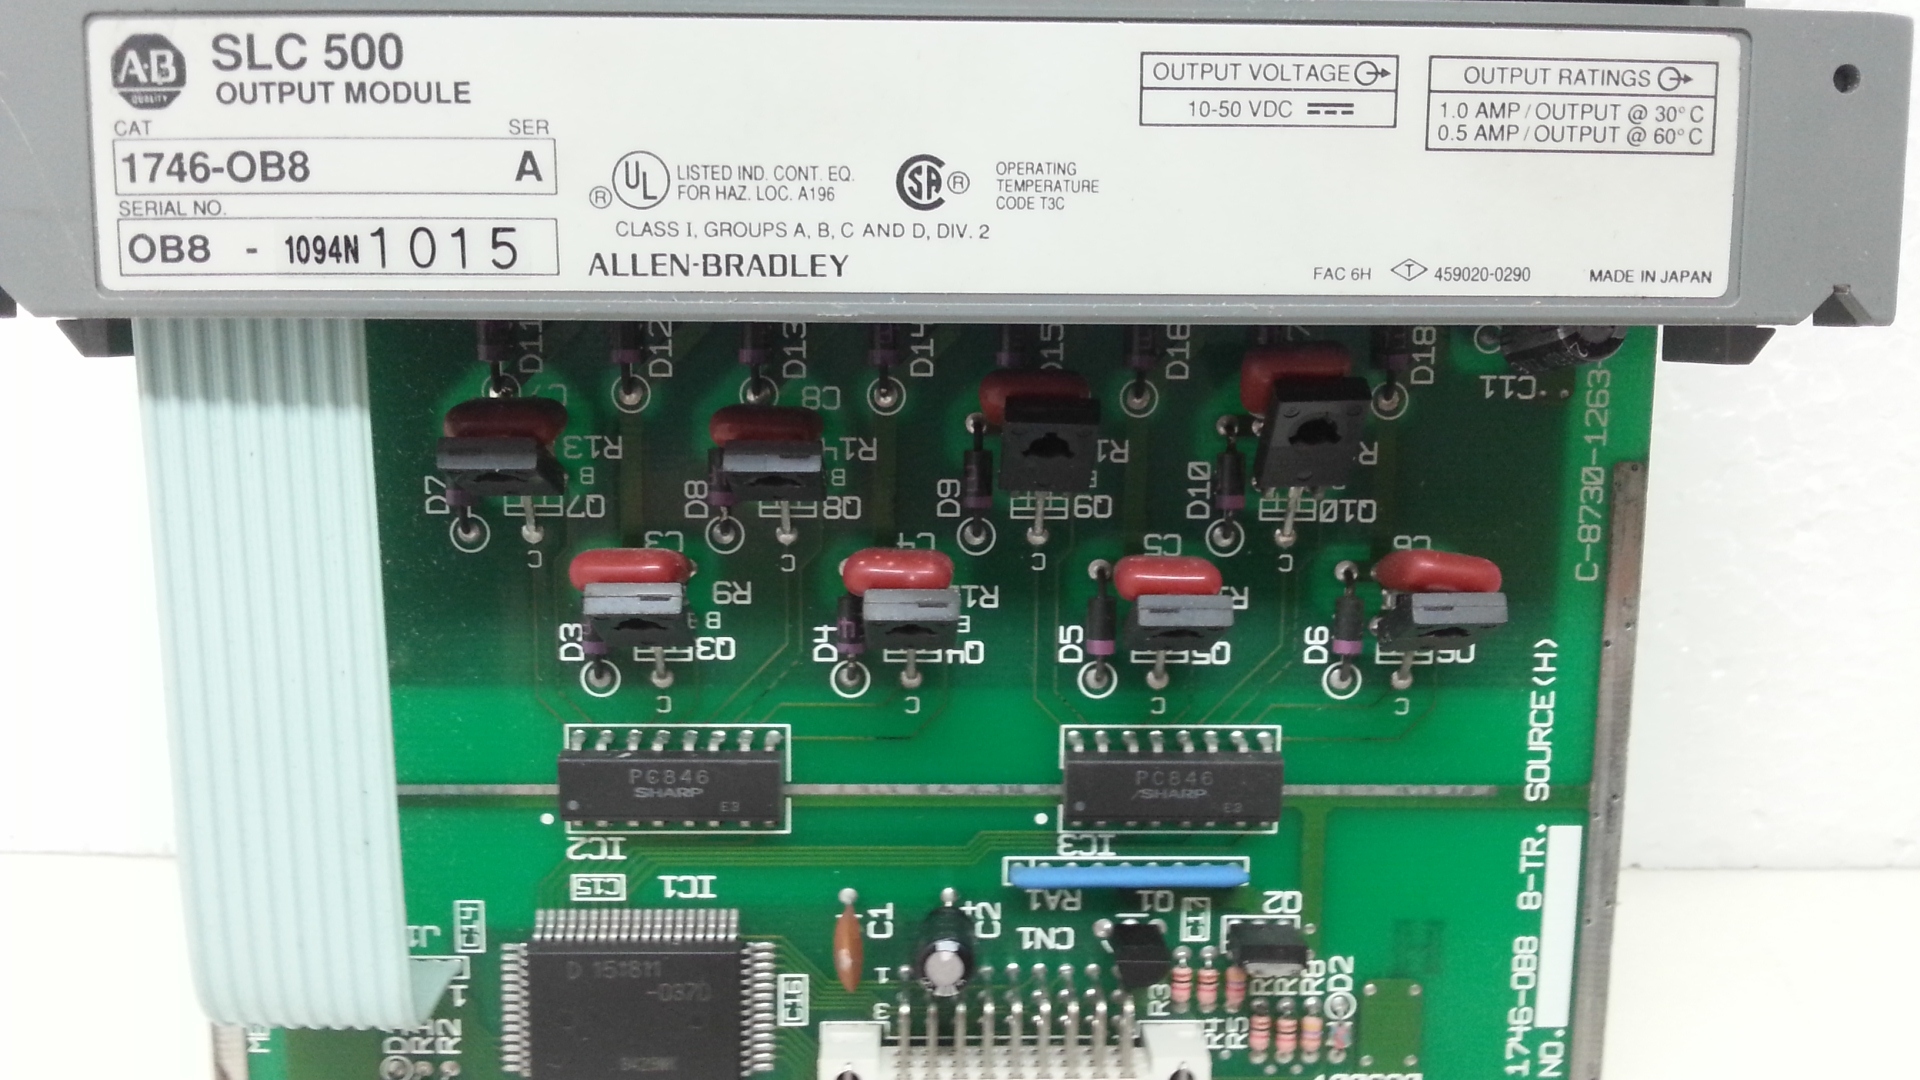 1746-OB8 SLC500 output module.